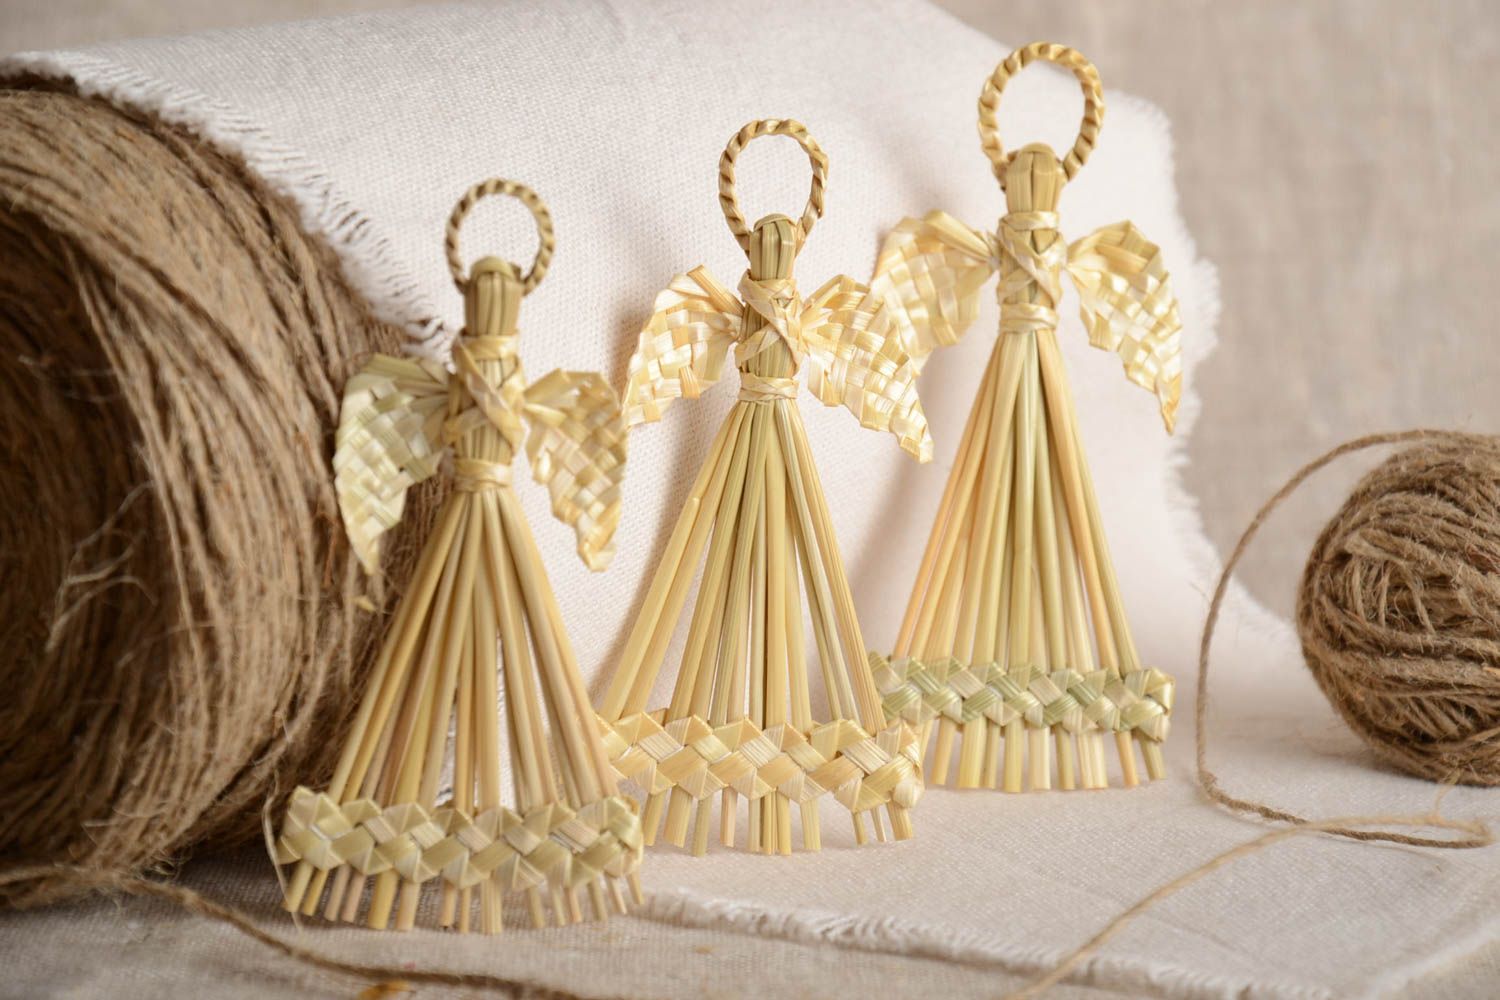 Интерьерные подвески плетеные из соломы ручной работы 3 изделия эко декор  фото 1